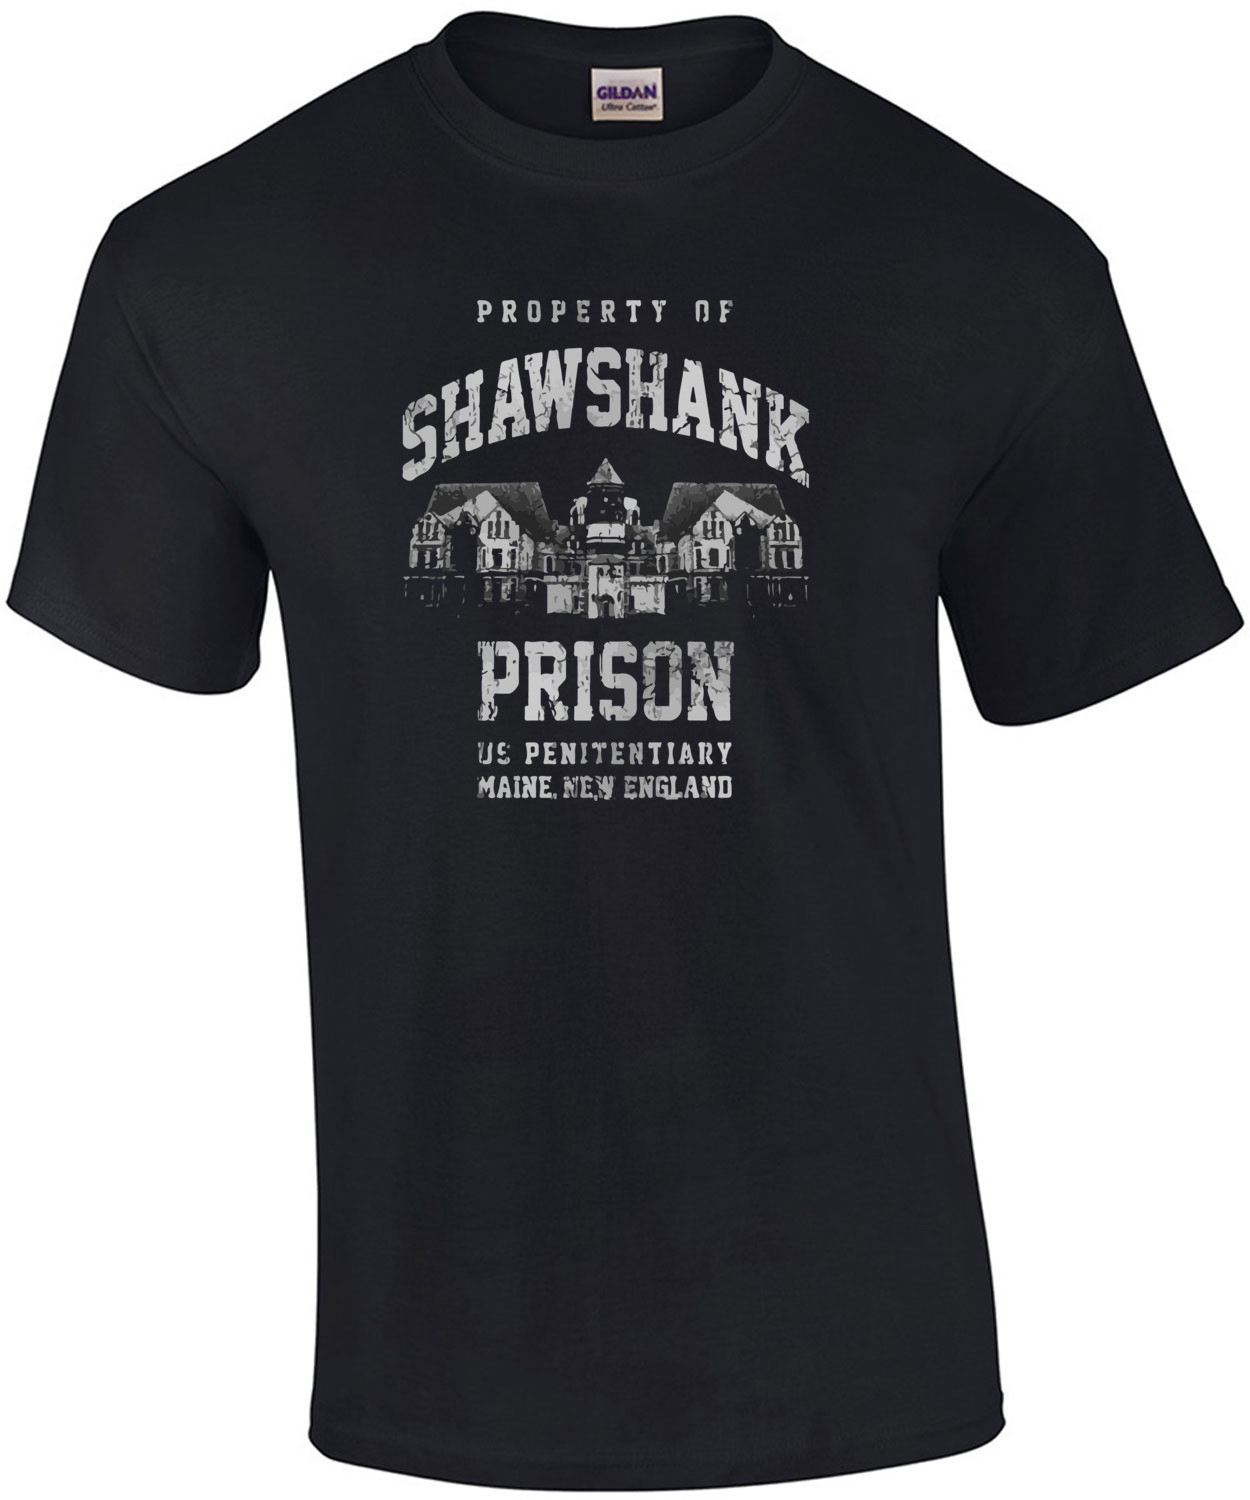 Shawshank Prison - Shawshank Redemption T-Shirt